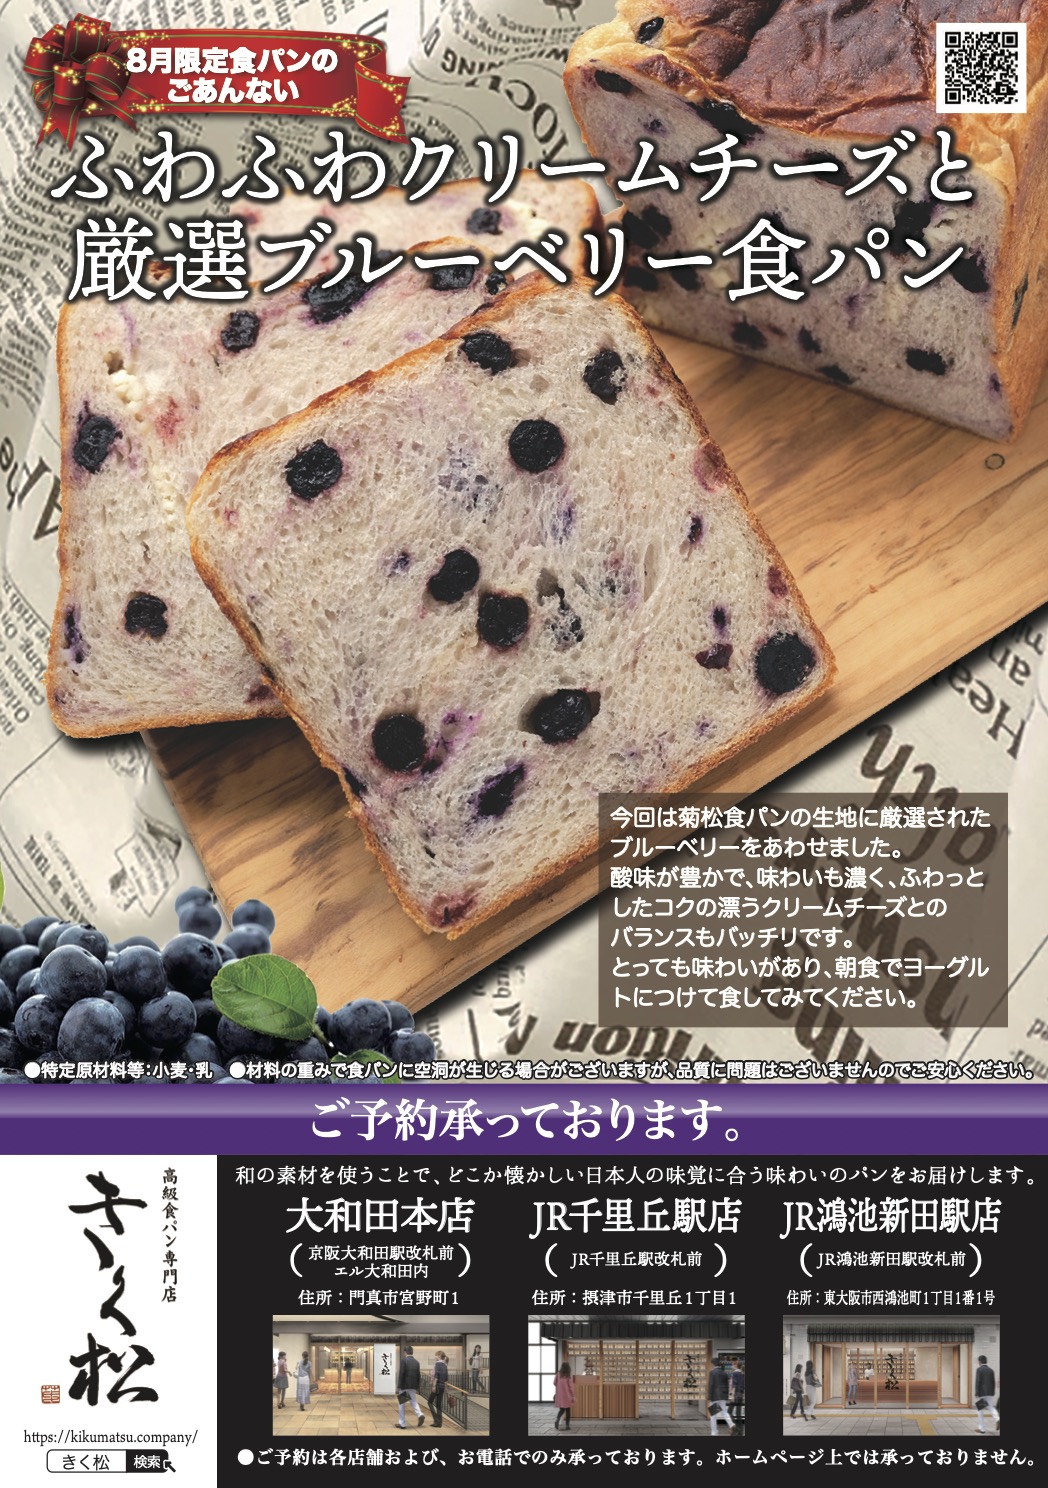 8月の限定食パンは【ふわふわクリームチーズと厳選ブルーベリー食パン】